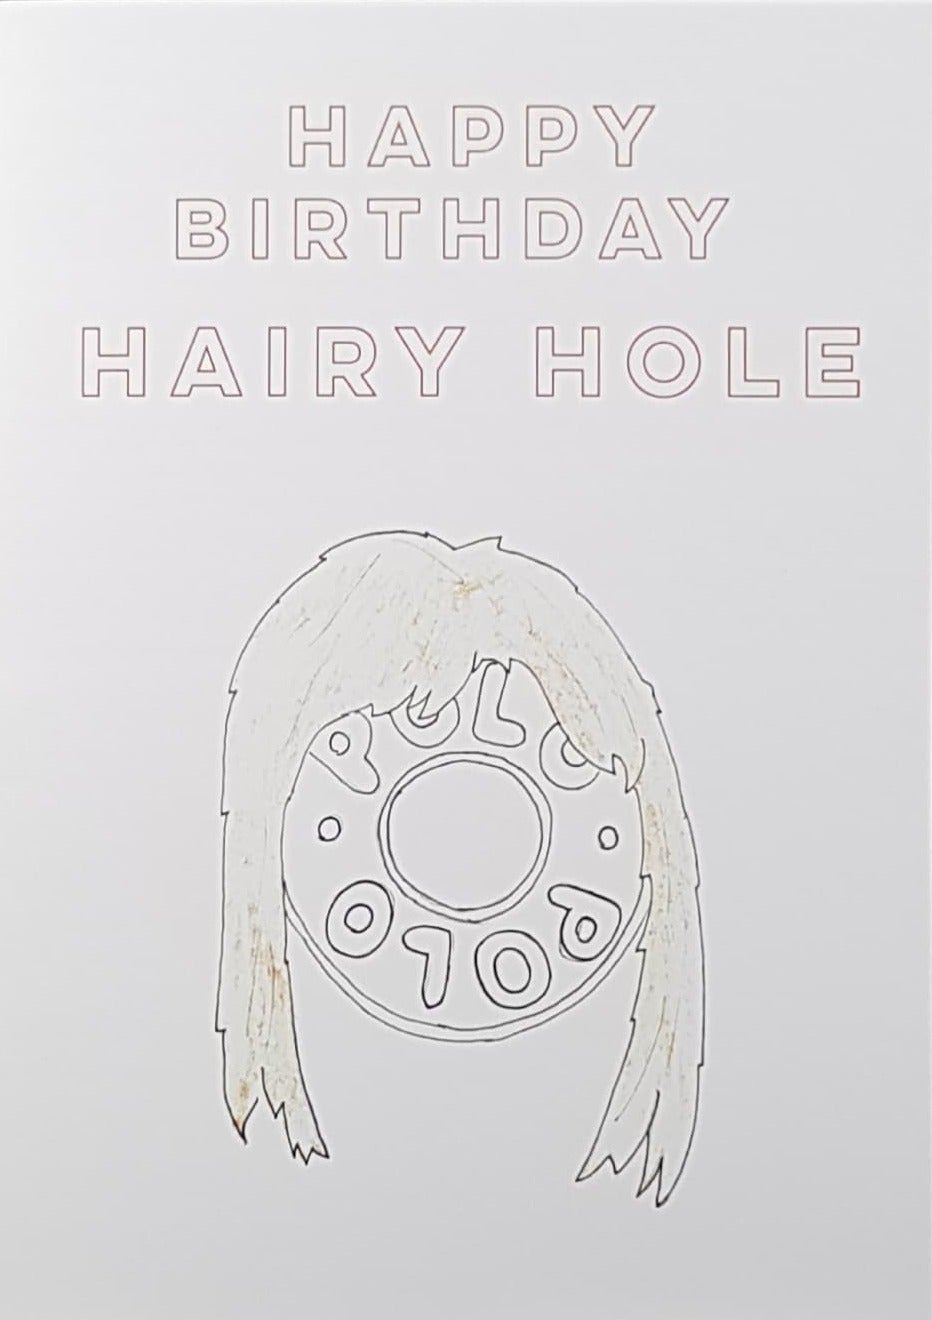 Dublin Card Company - A Hairy Hole (Birthday)